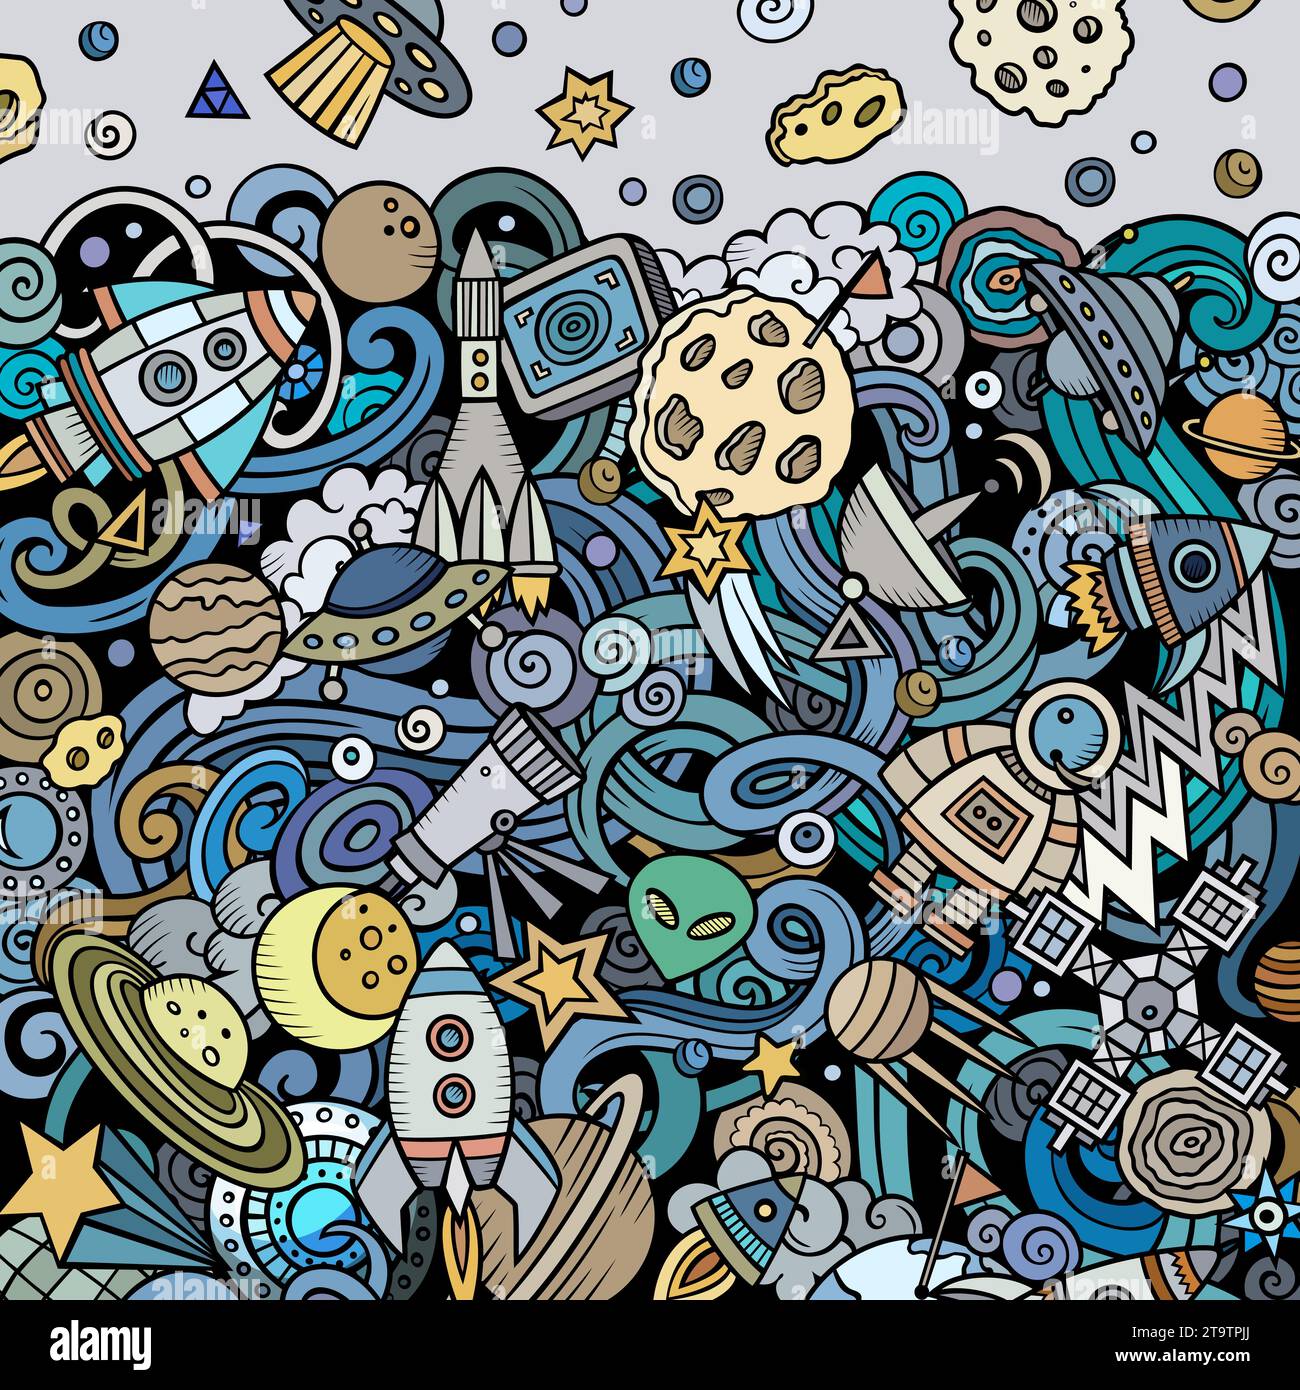 Cartoon-Vektor kritzelt Space Frame. Bunt, detailreich, mit vielen Objekten im Hintergrund. Helle Farben kosmischen lustigen Rand Stock Vektor